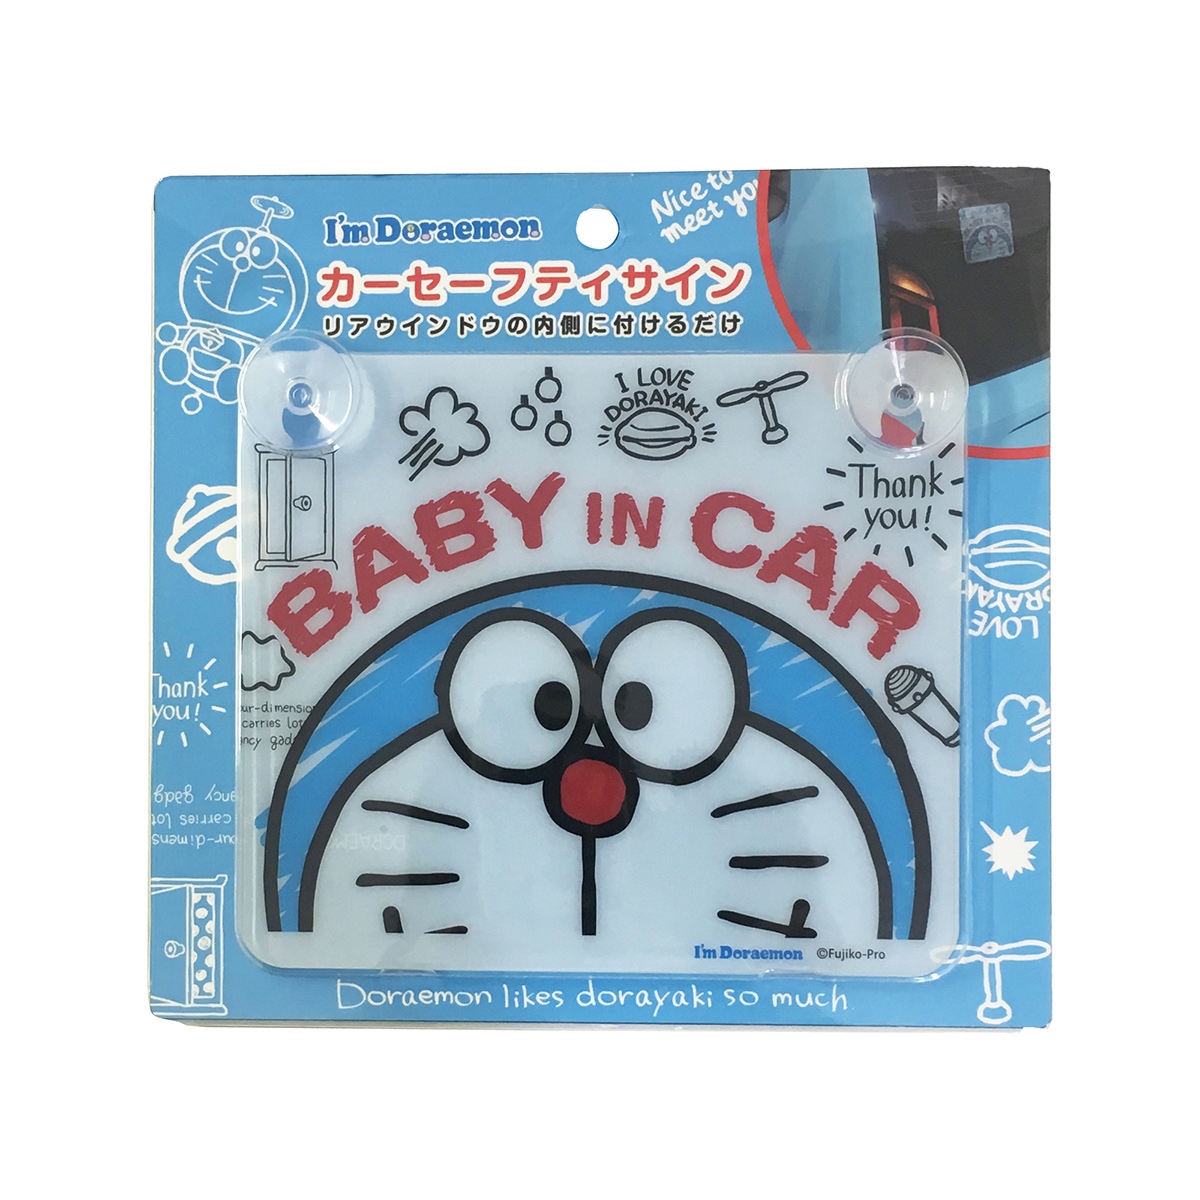 楽天市場 送料無料 メール便 I M Doraemon カーセーフティサイン 吸盤タイプ 吸盤 ベビーインカー Baby In Car ドラえもん キャラクター 車 カー ステッカー 赤ちゃん ベビー 車用品 ブランド 取り外し可能 後方 シール Kid キッズ 安全 運転 安全 ベビー